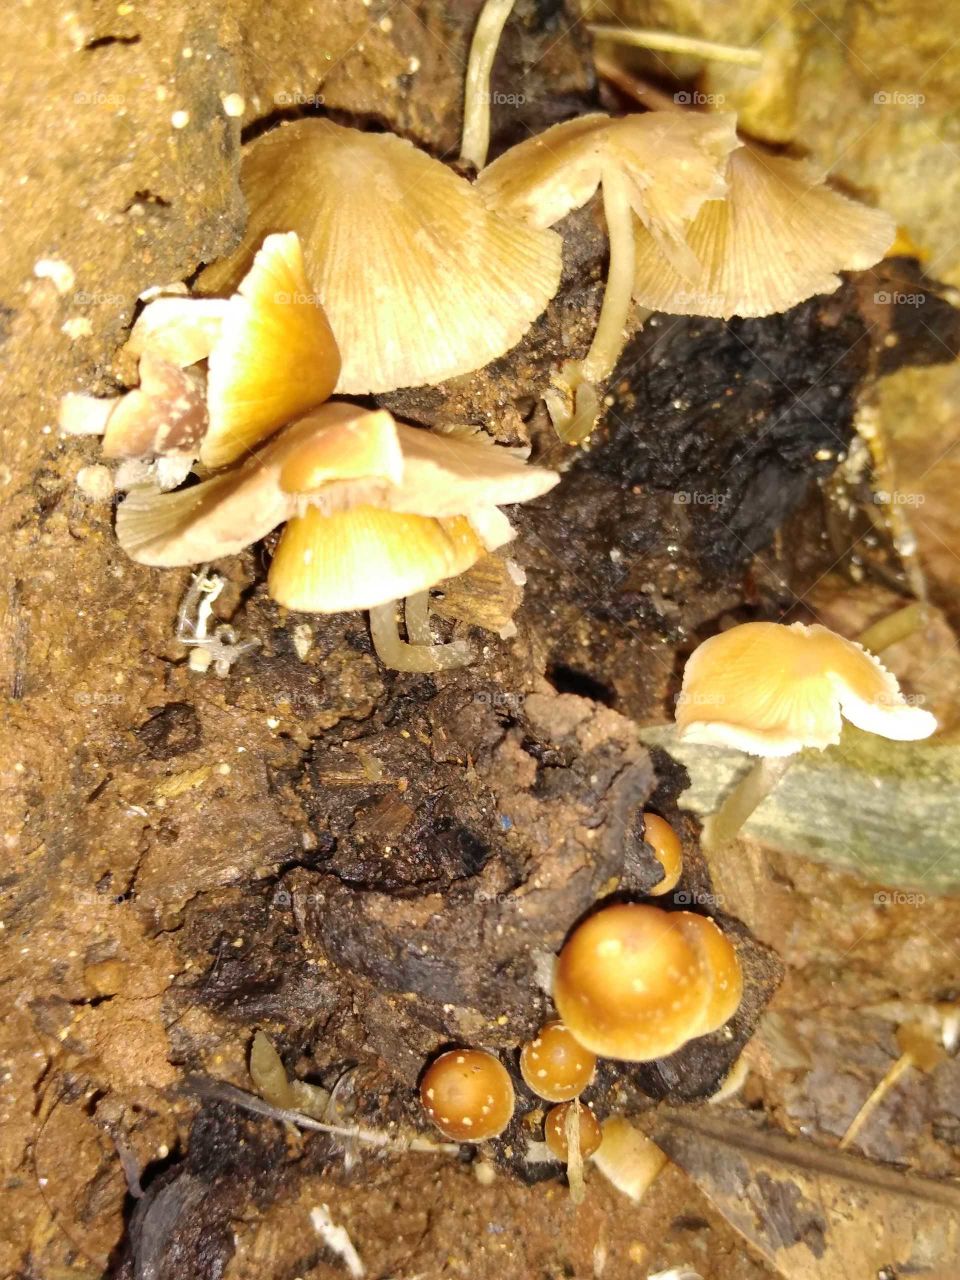 mushrooms on the wood bark